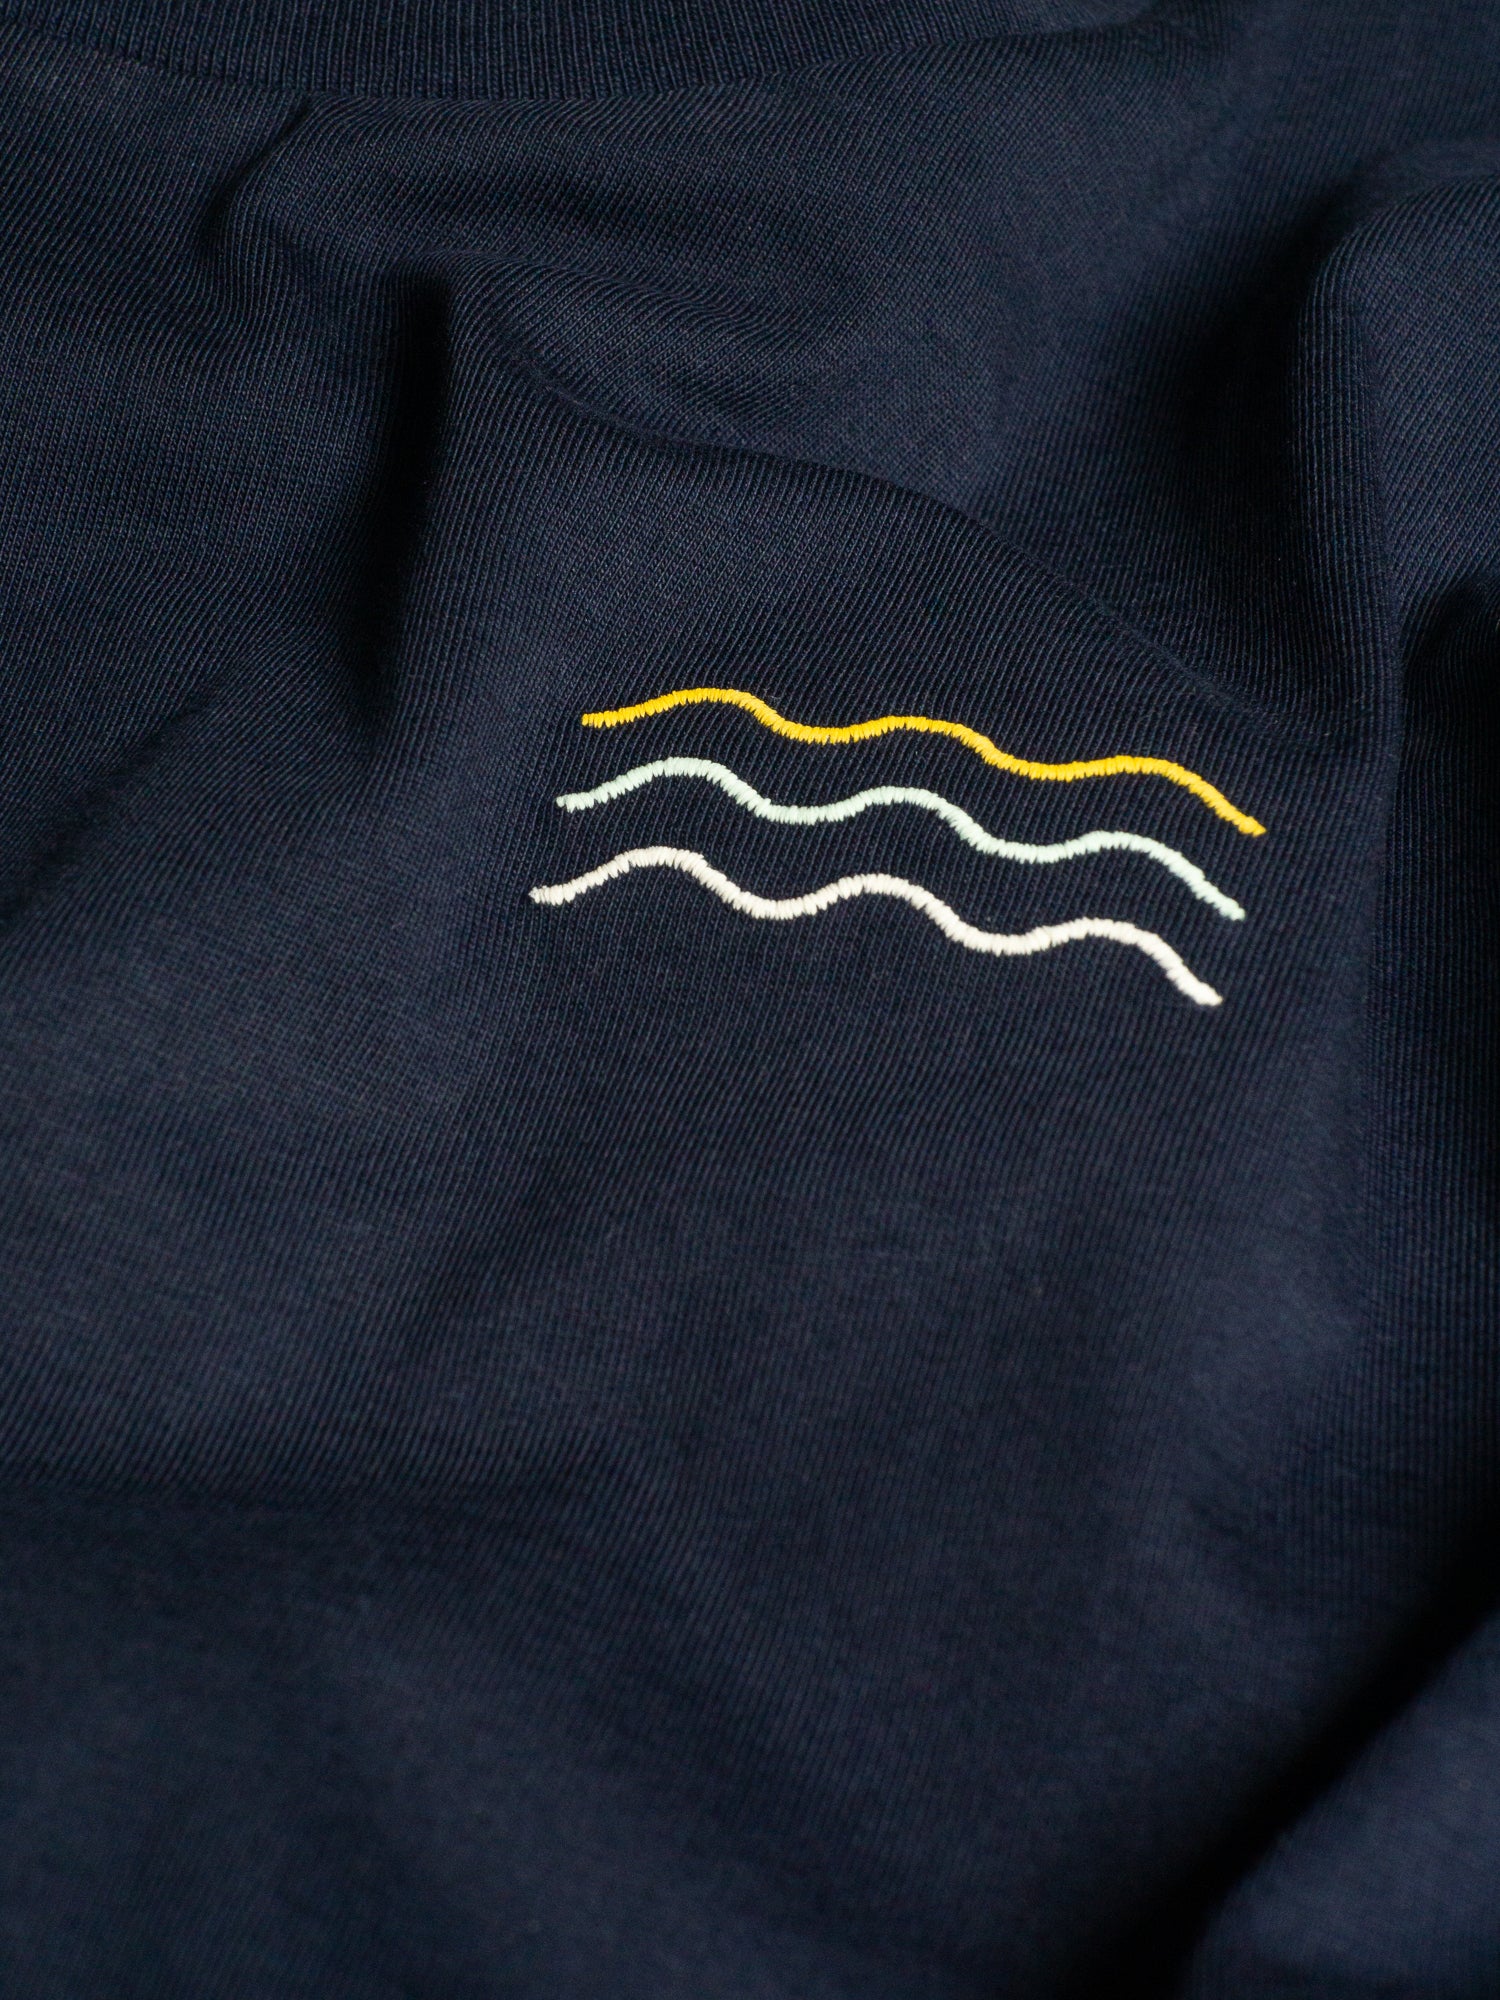 Wellen Motiv von unserem FUXBAU Fair Fashion Surf T-Shirt in navy aus Biobaumwolle